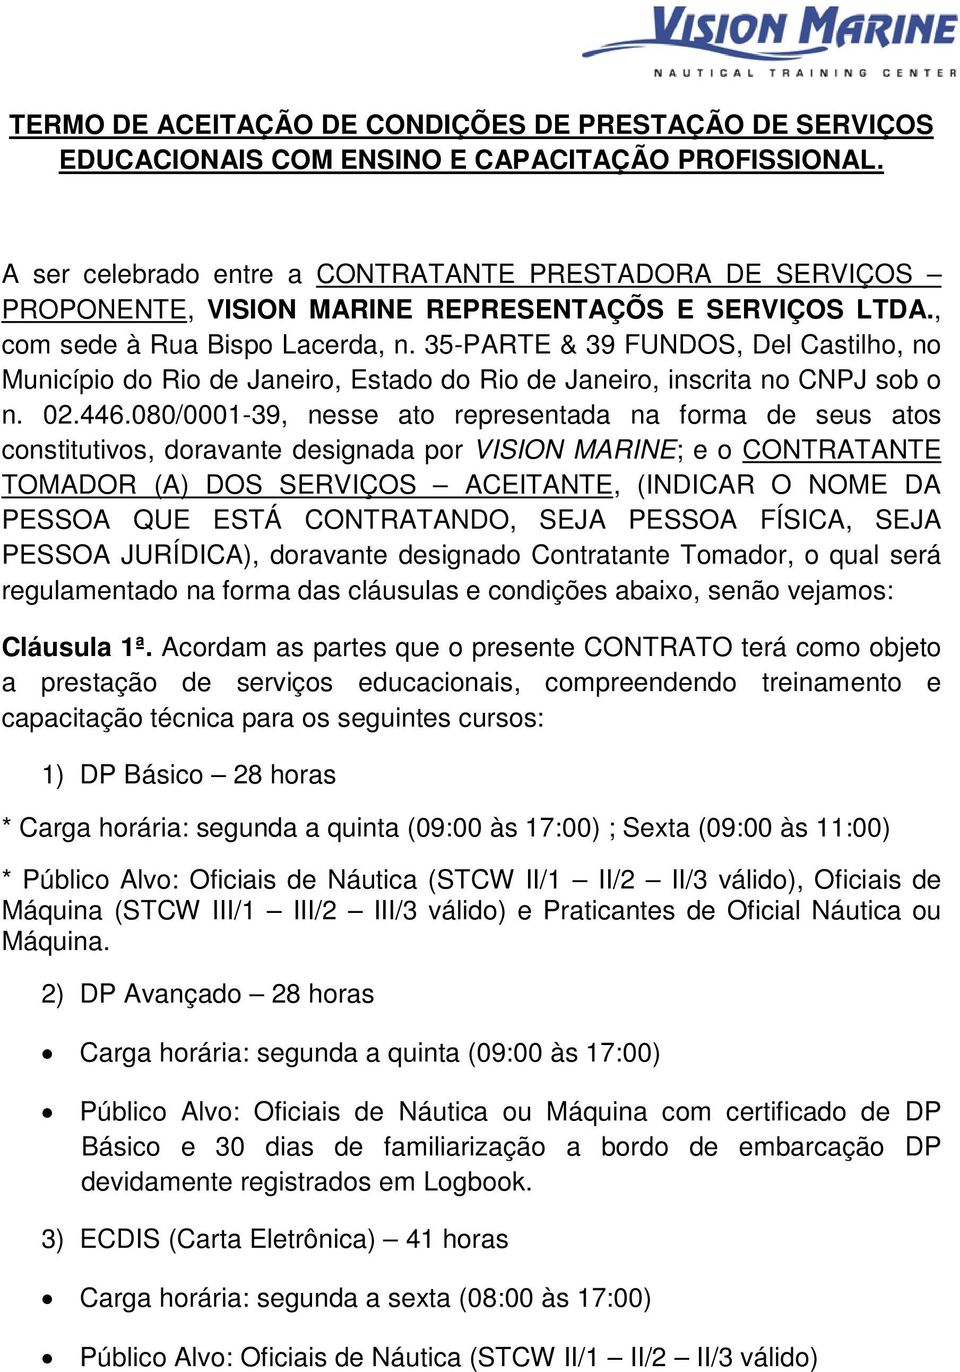 35-PARTE & 39 FUNDOS, Del Castilho, no Município do Rio de Janeiro, Estado do Rio de Janeiro, inscrita no CNPJ sob o n. 02.446.